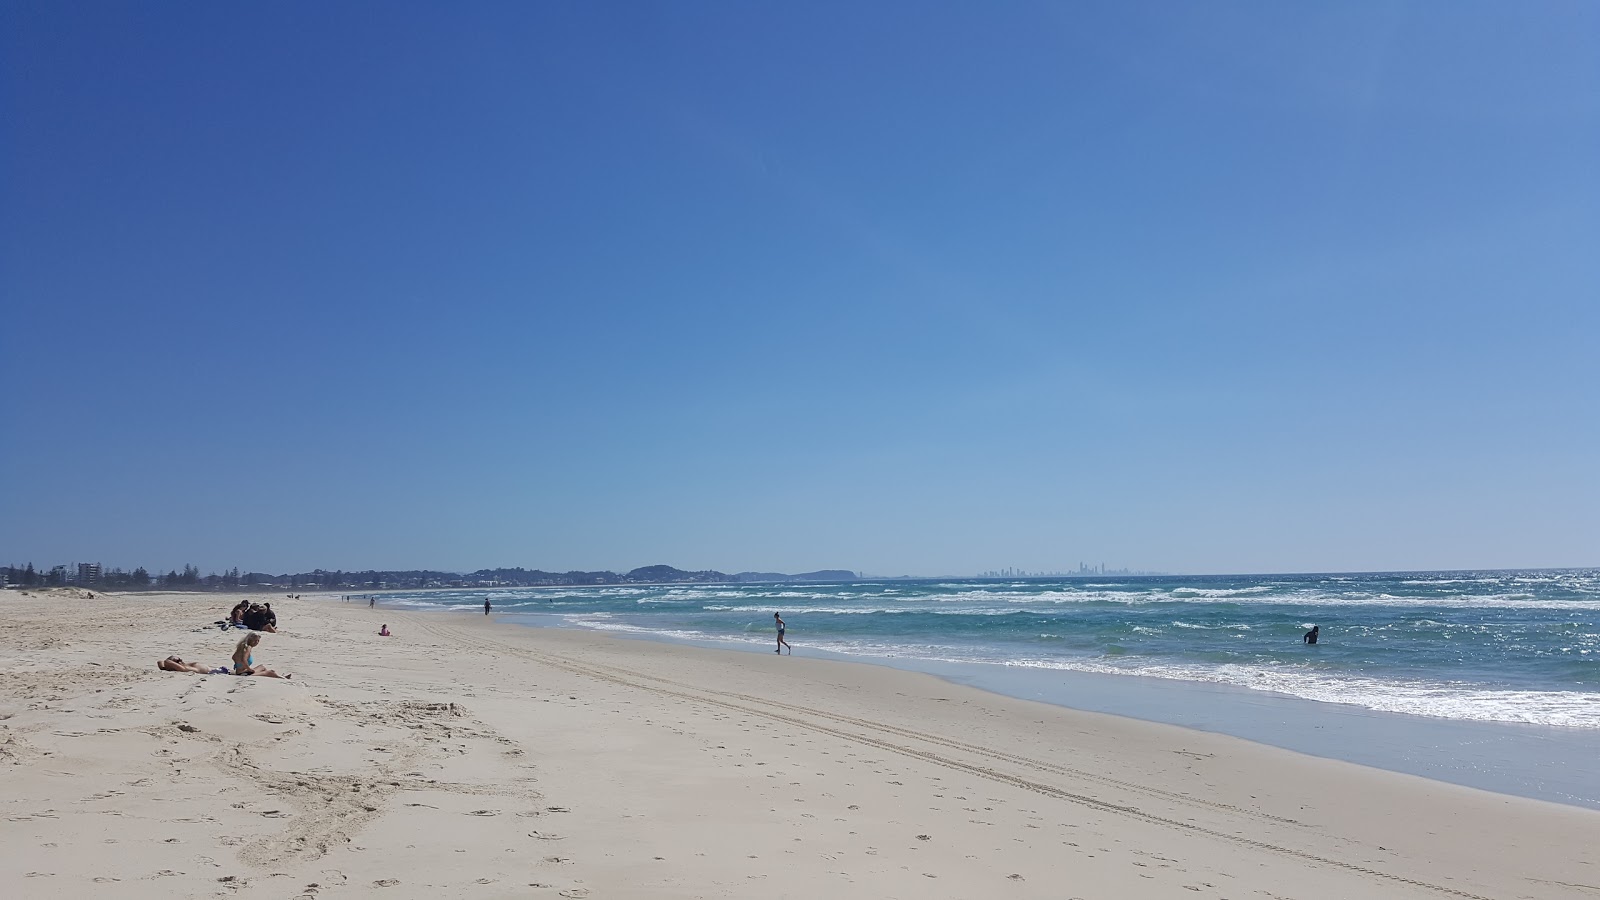 Kirra Beach'in fotoğrafı çok temiz temizlik seviyesi ile